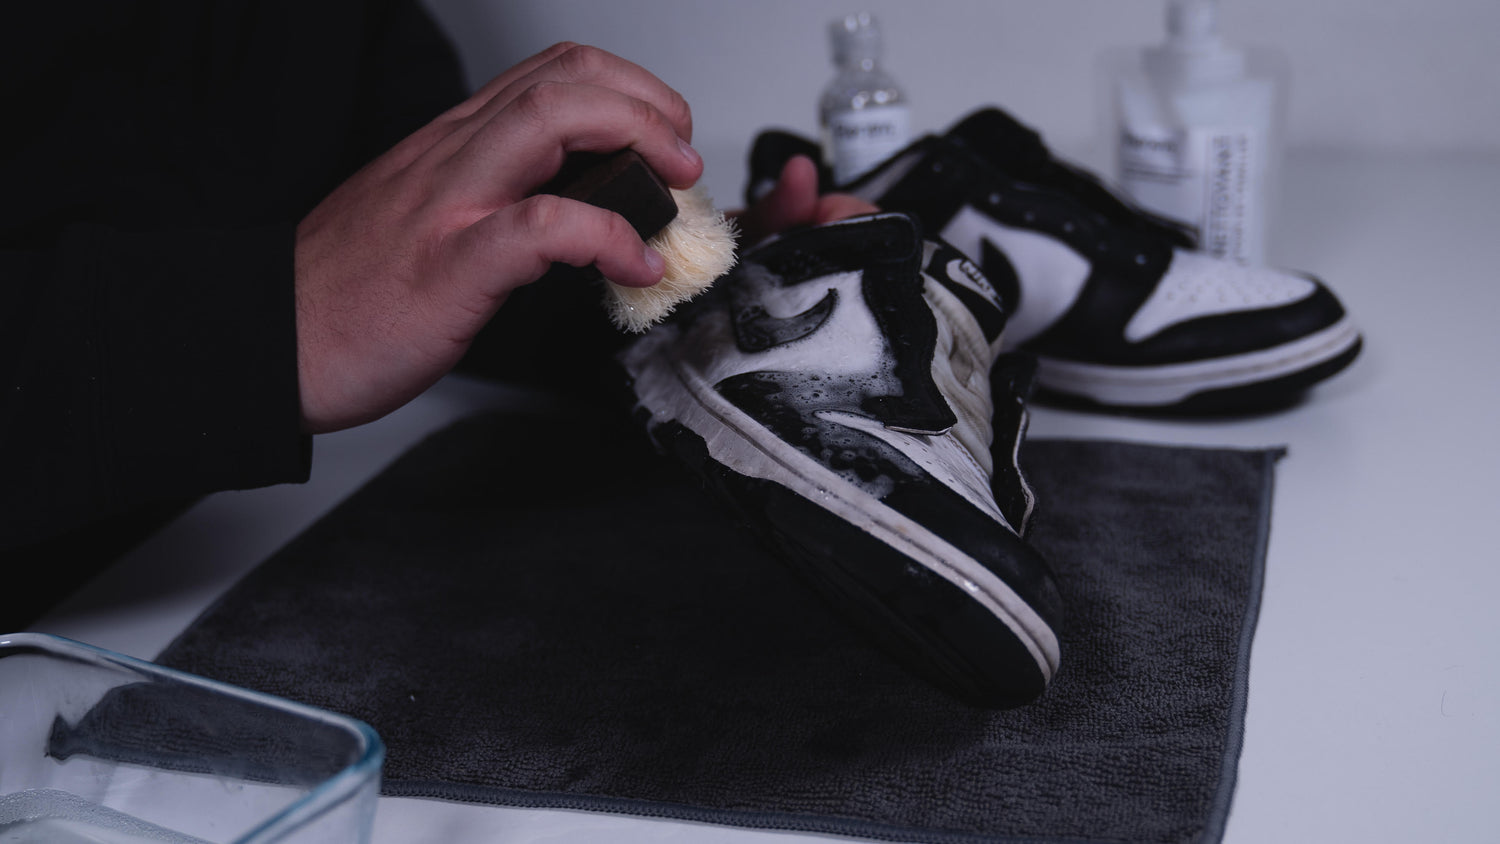 Renew- Les accessoires & produits nettoyants sneakers professionnel –  LaCliniqueStore